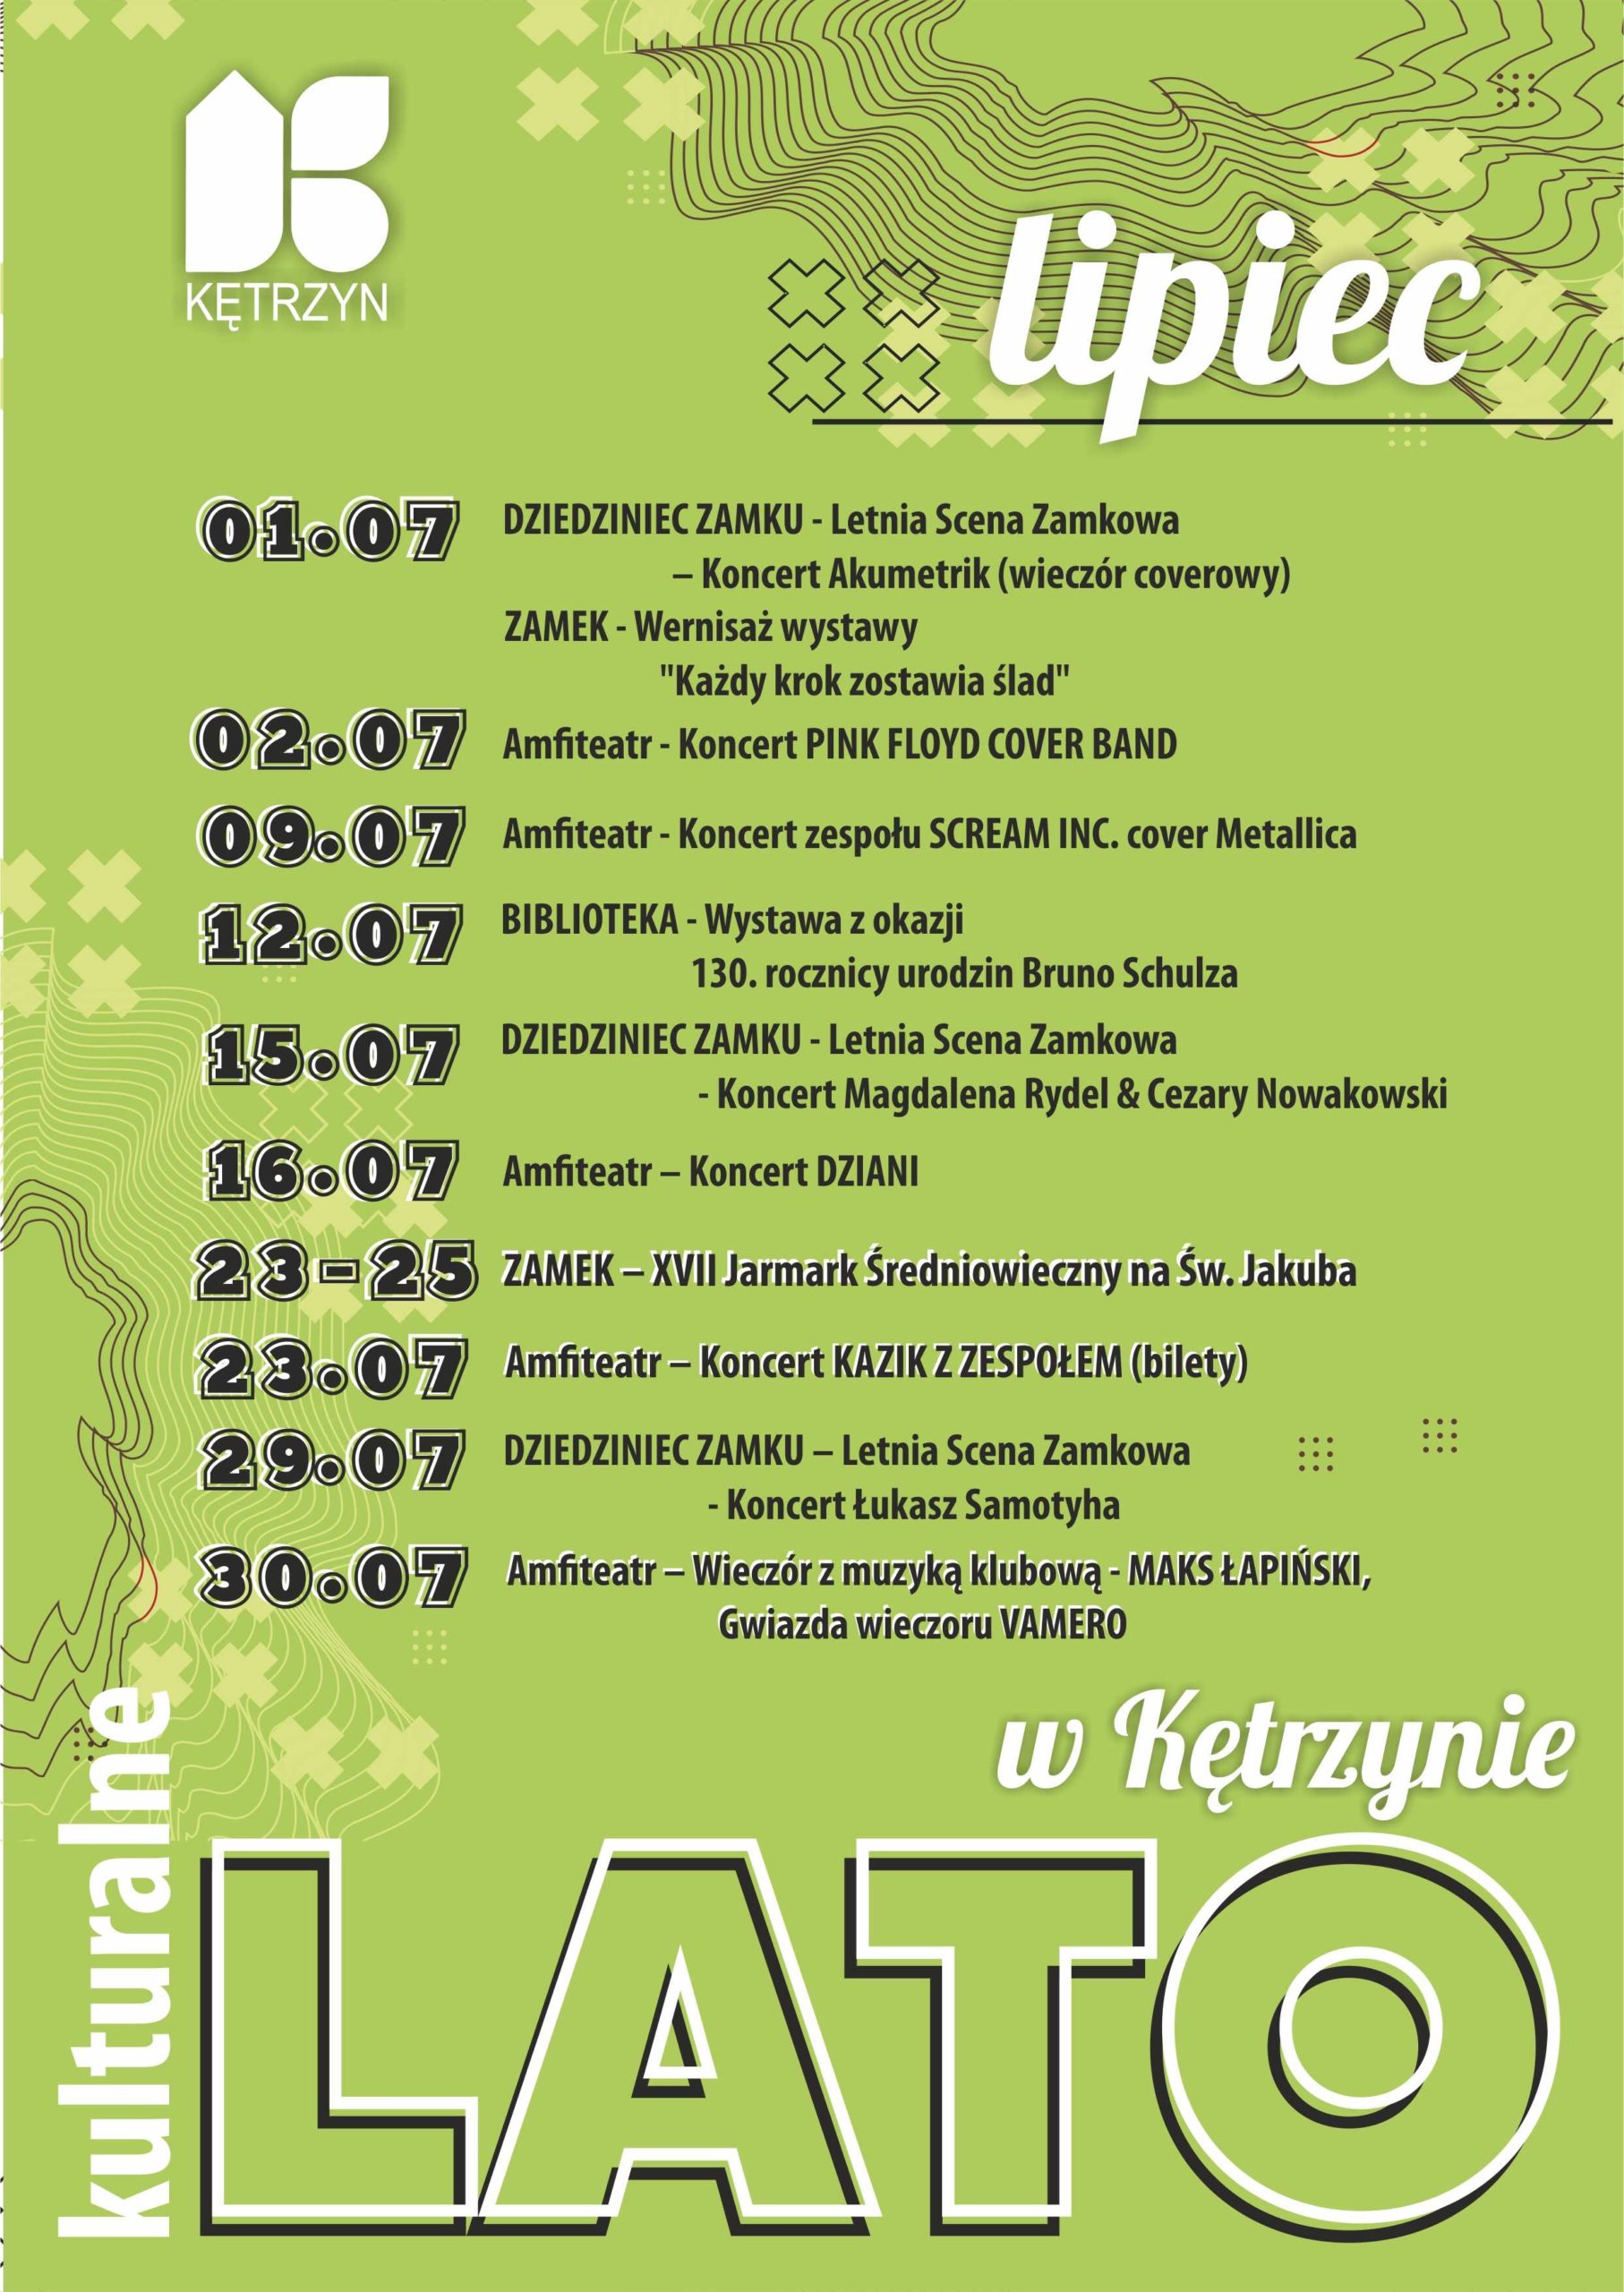 Infografika kalendarz lato w Kętrzynie - lipiec. Spis imprez. Powyżej plik do pobrania w pdf